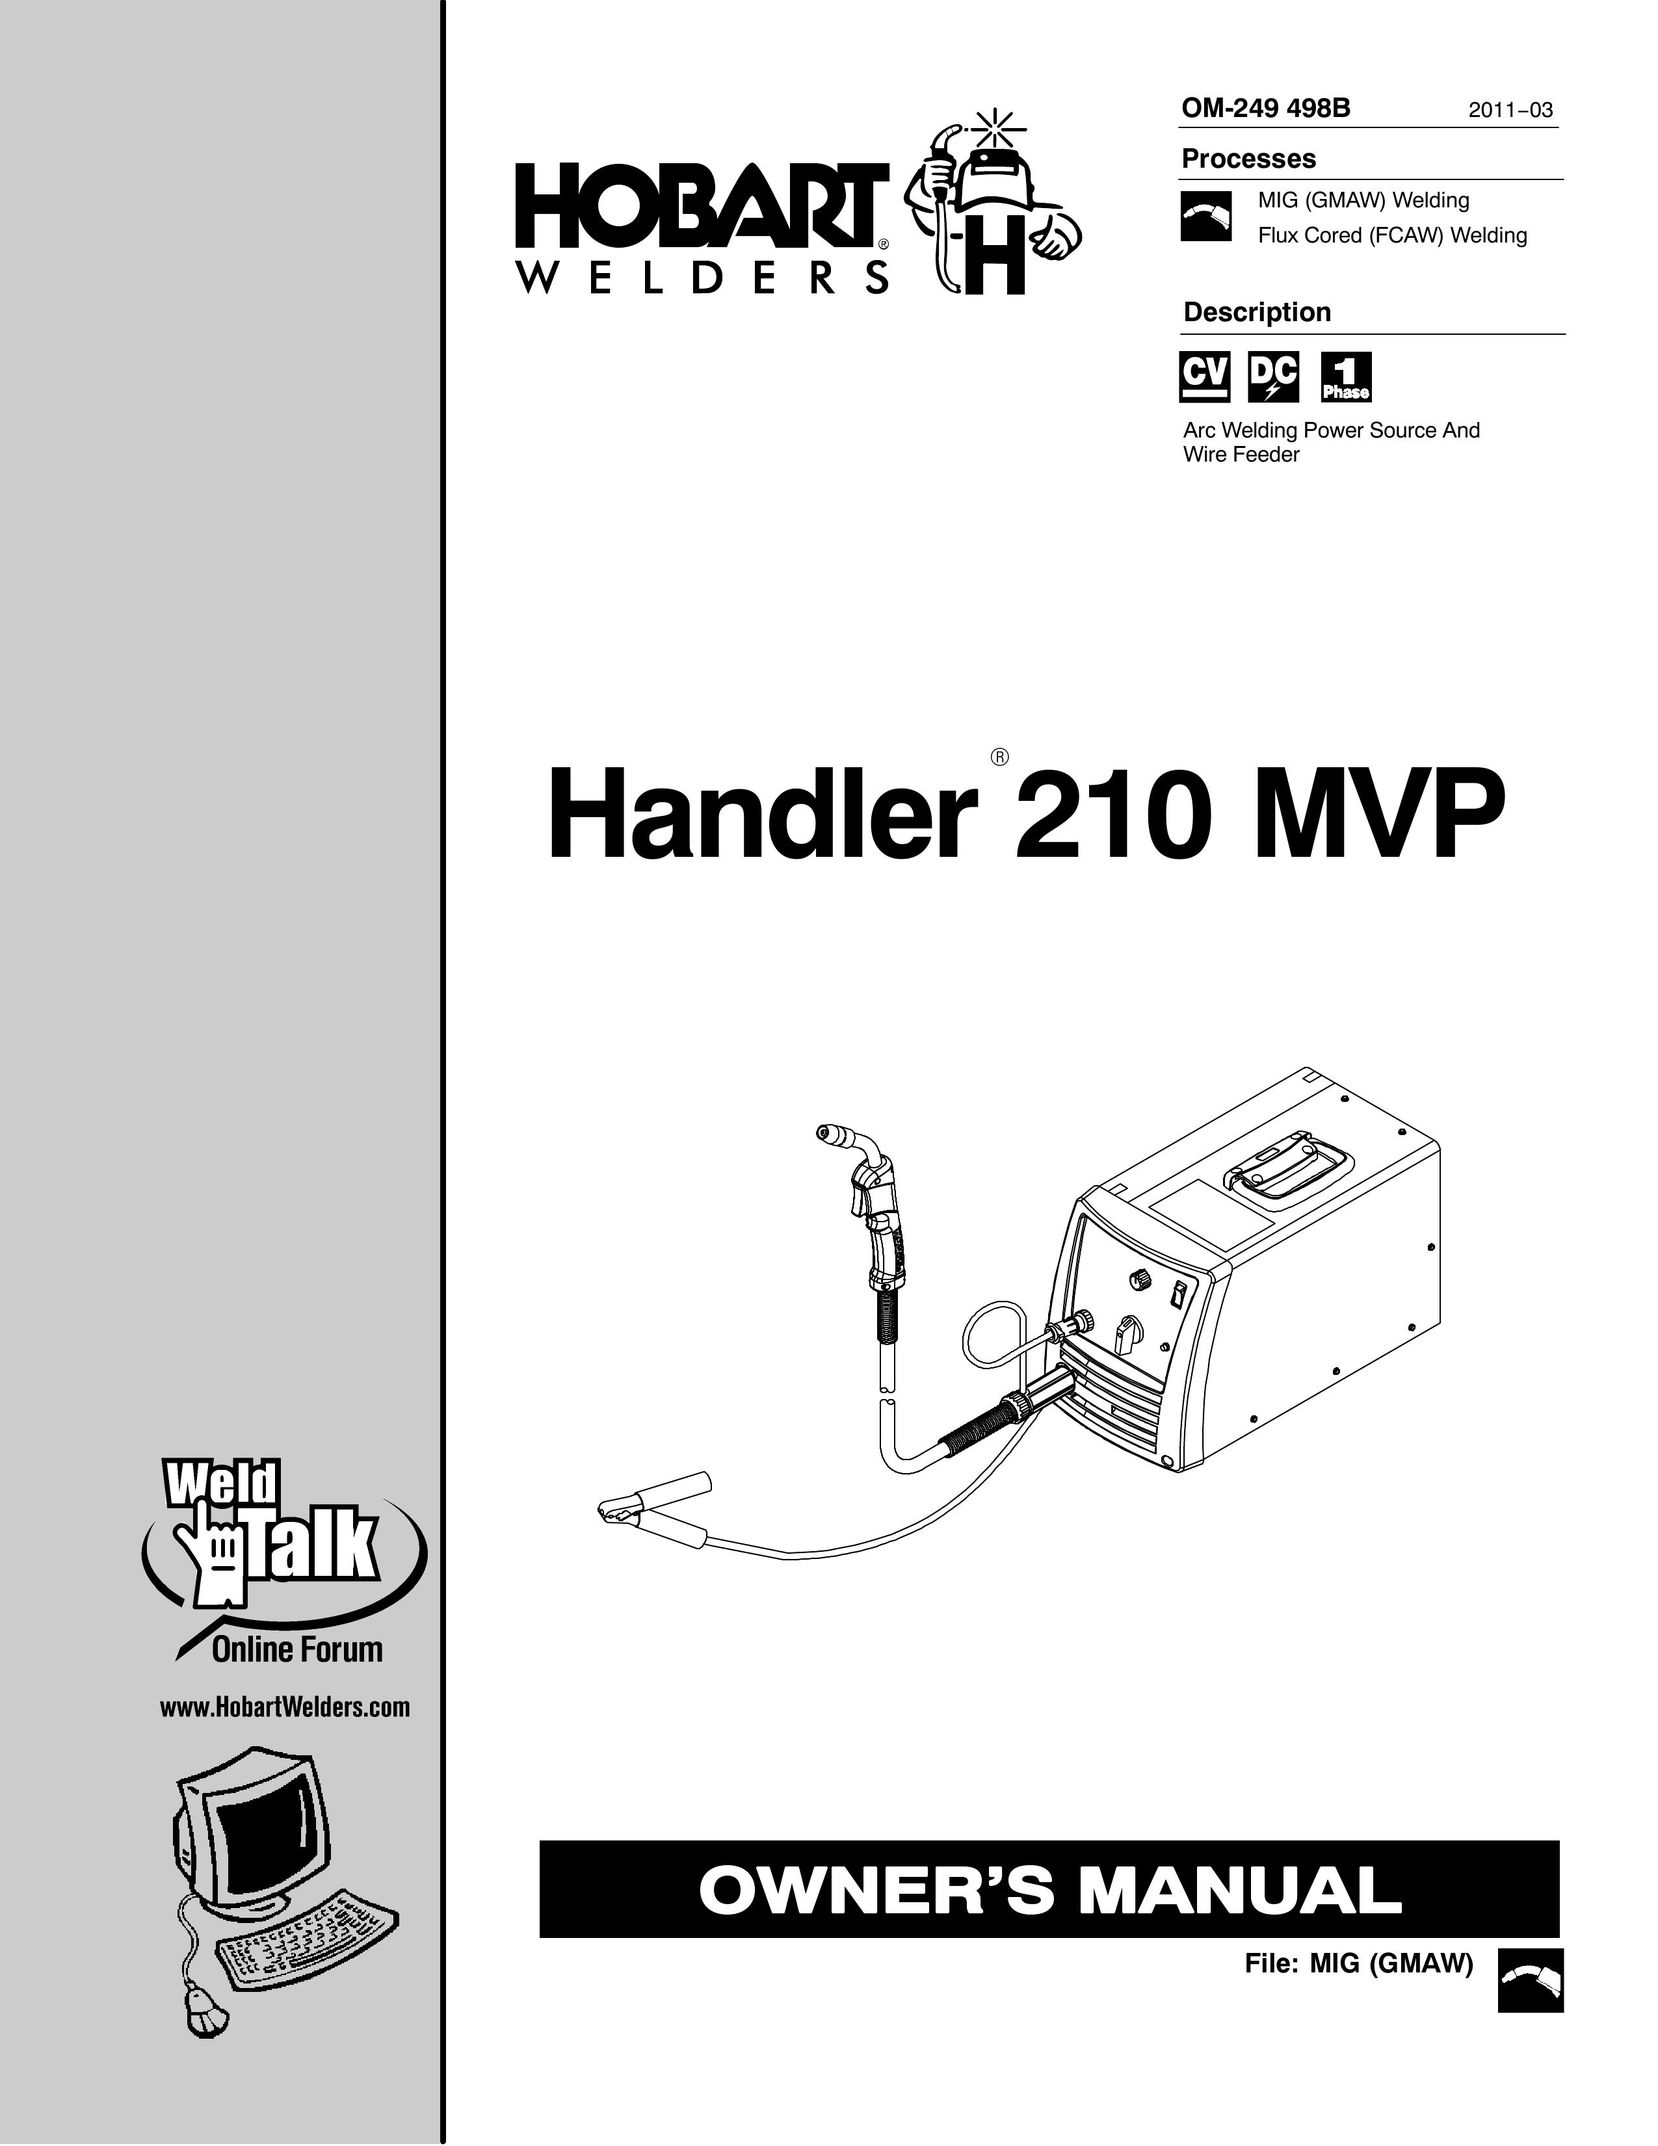 Hobart Welding Products 210 MVP Welder User Manual